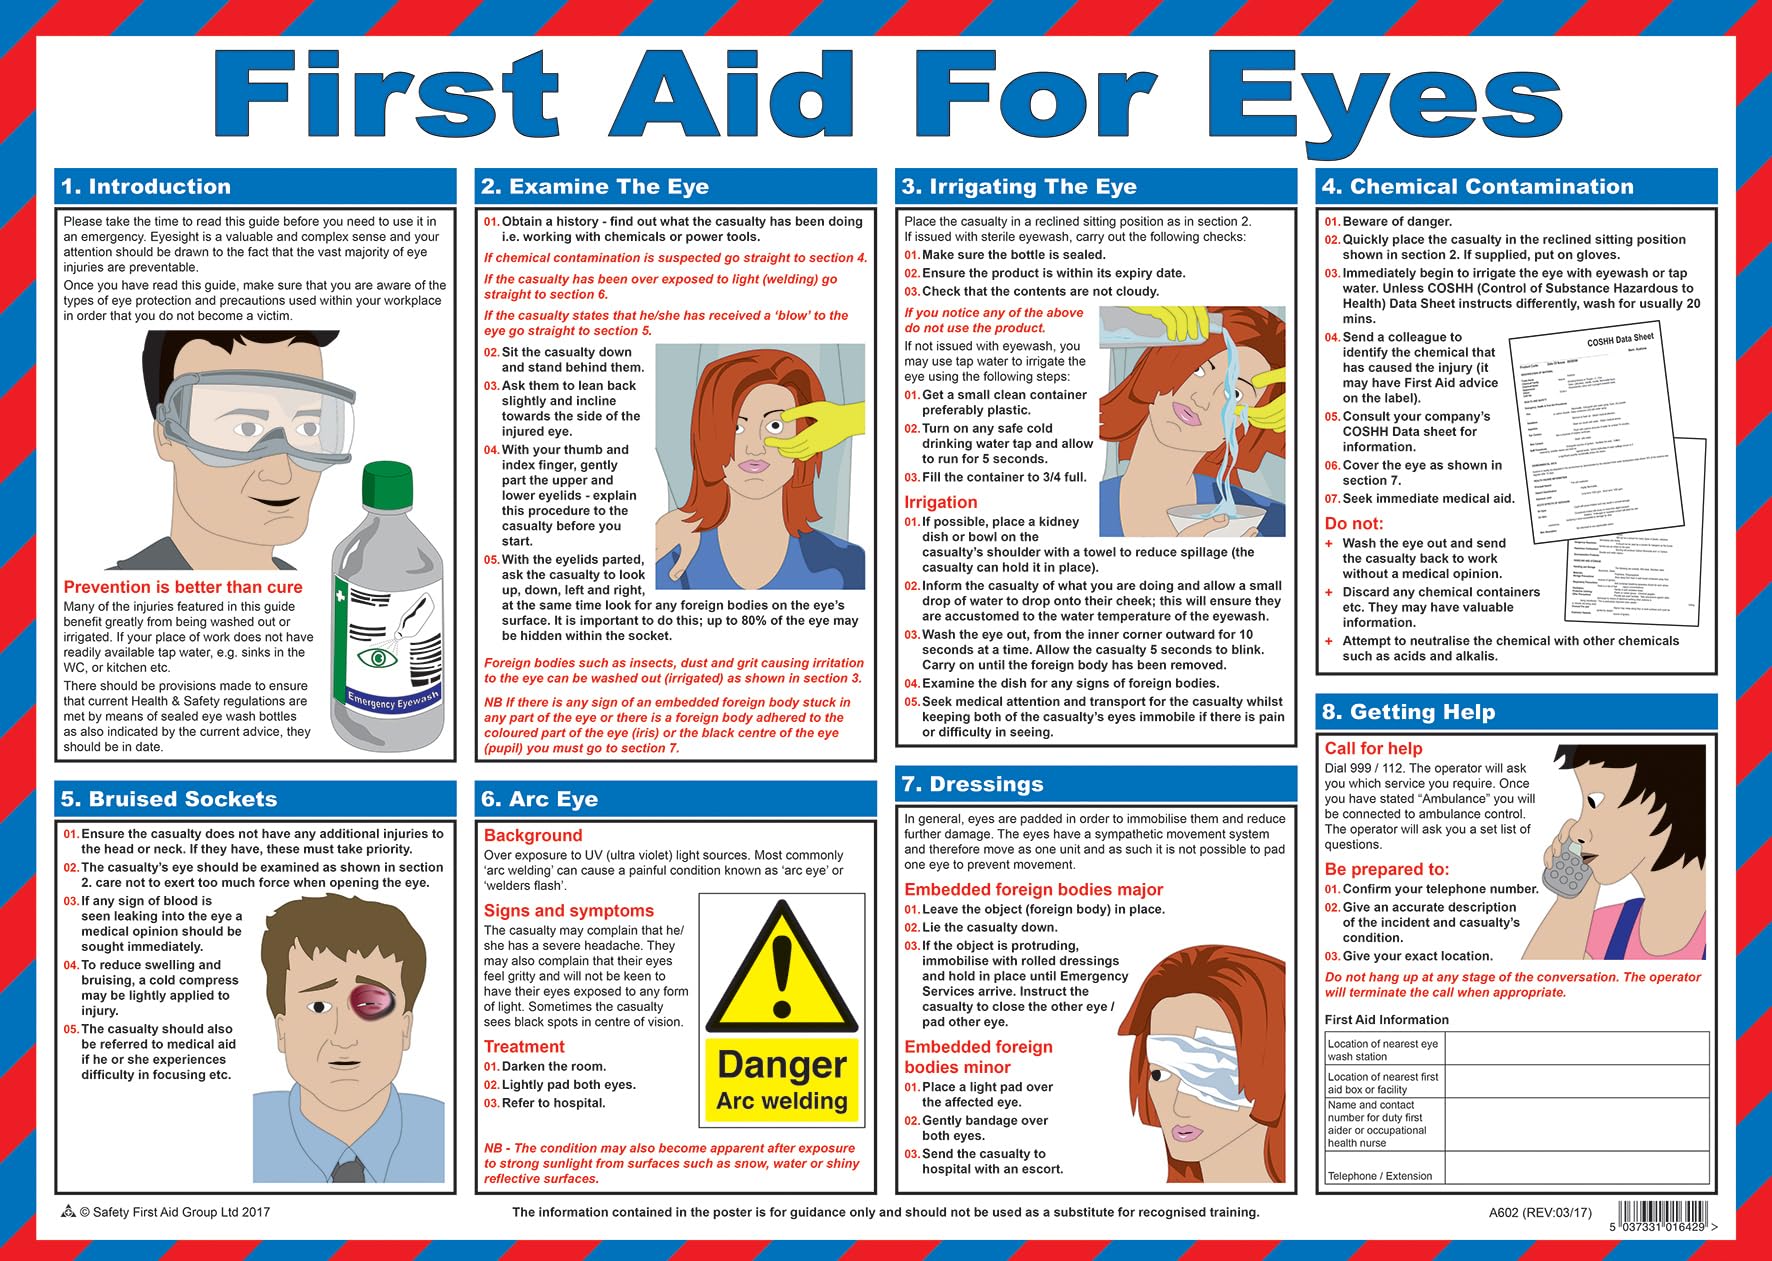 Safety First AID A602T Erste Hilfe für Augen Poster, 59 x 42 cm von Safety First Aid Group